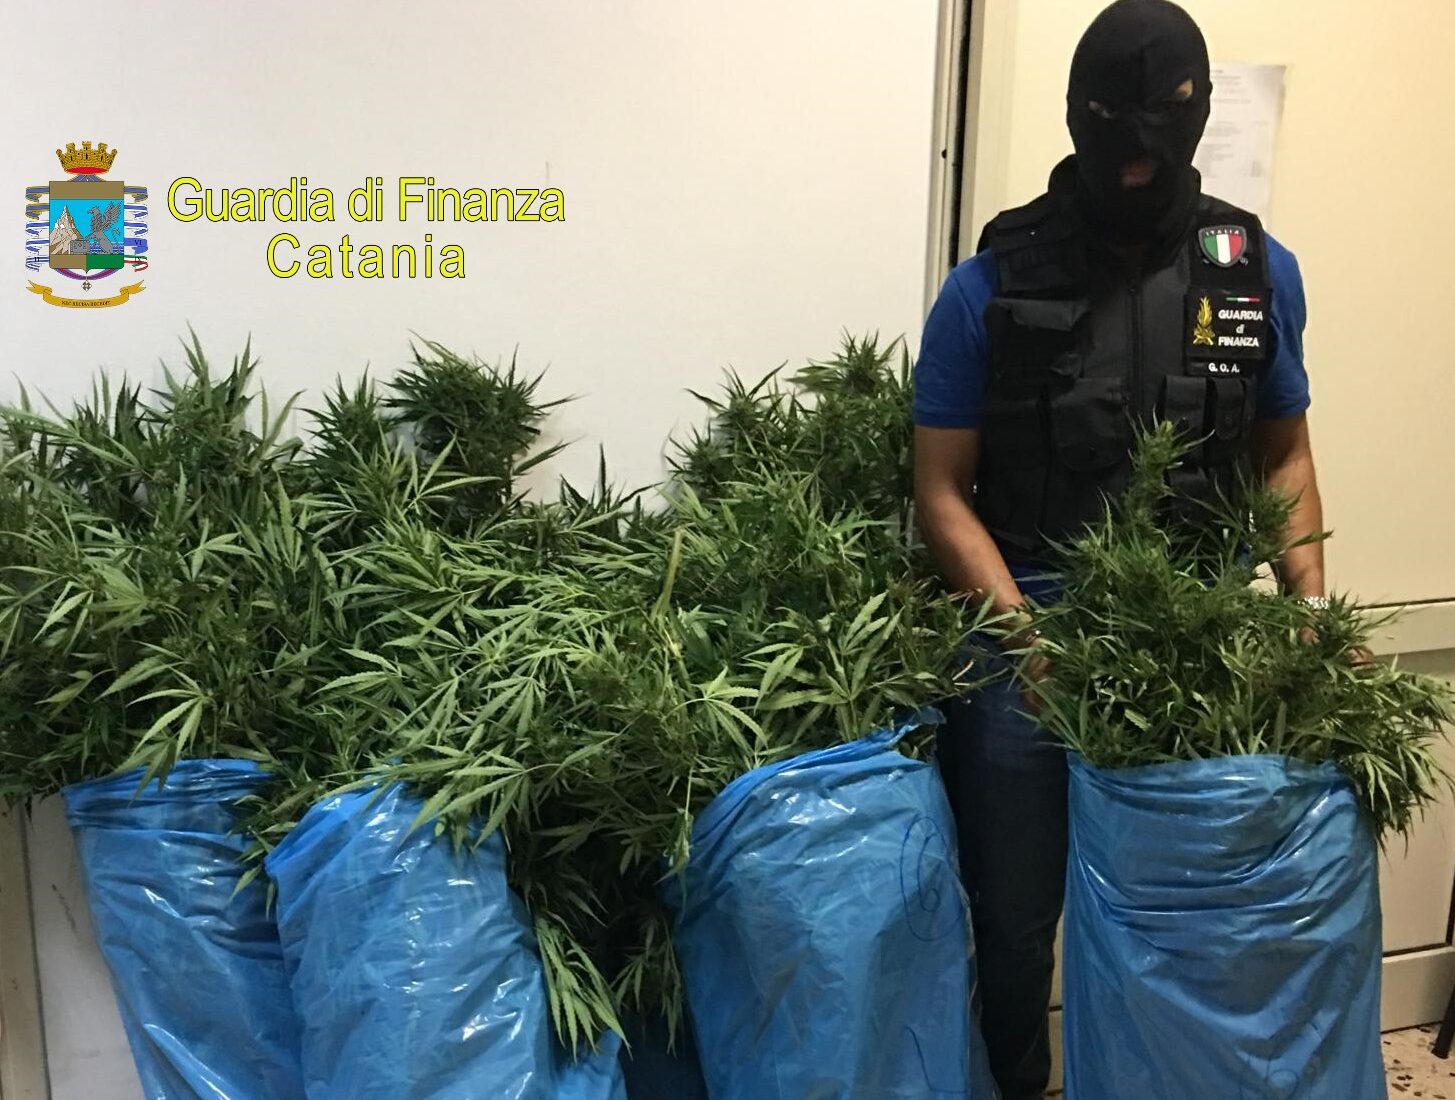 Lentini, fratello capo clan Nardo (Santapaola) arrestato con oltre 1 kg di marijuana